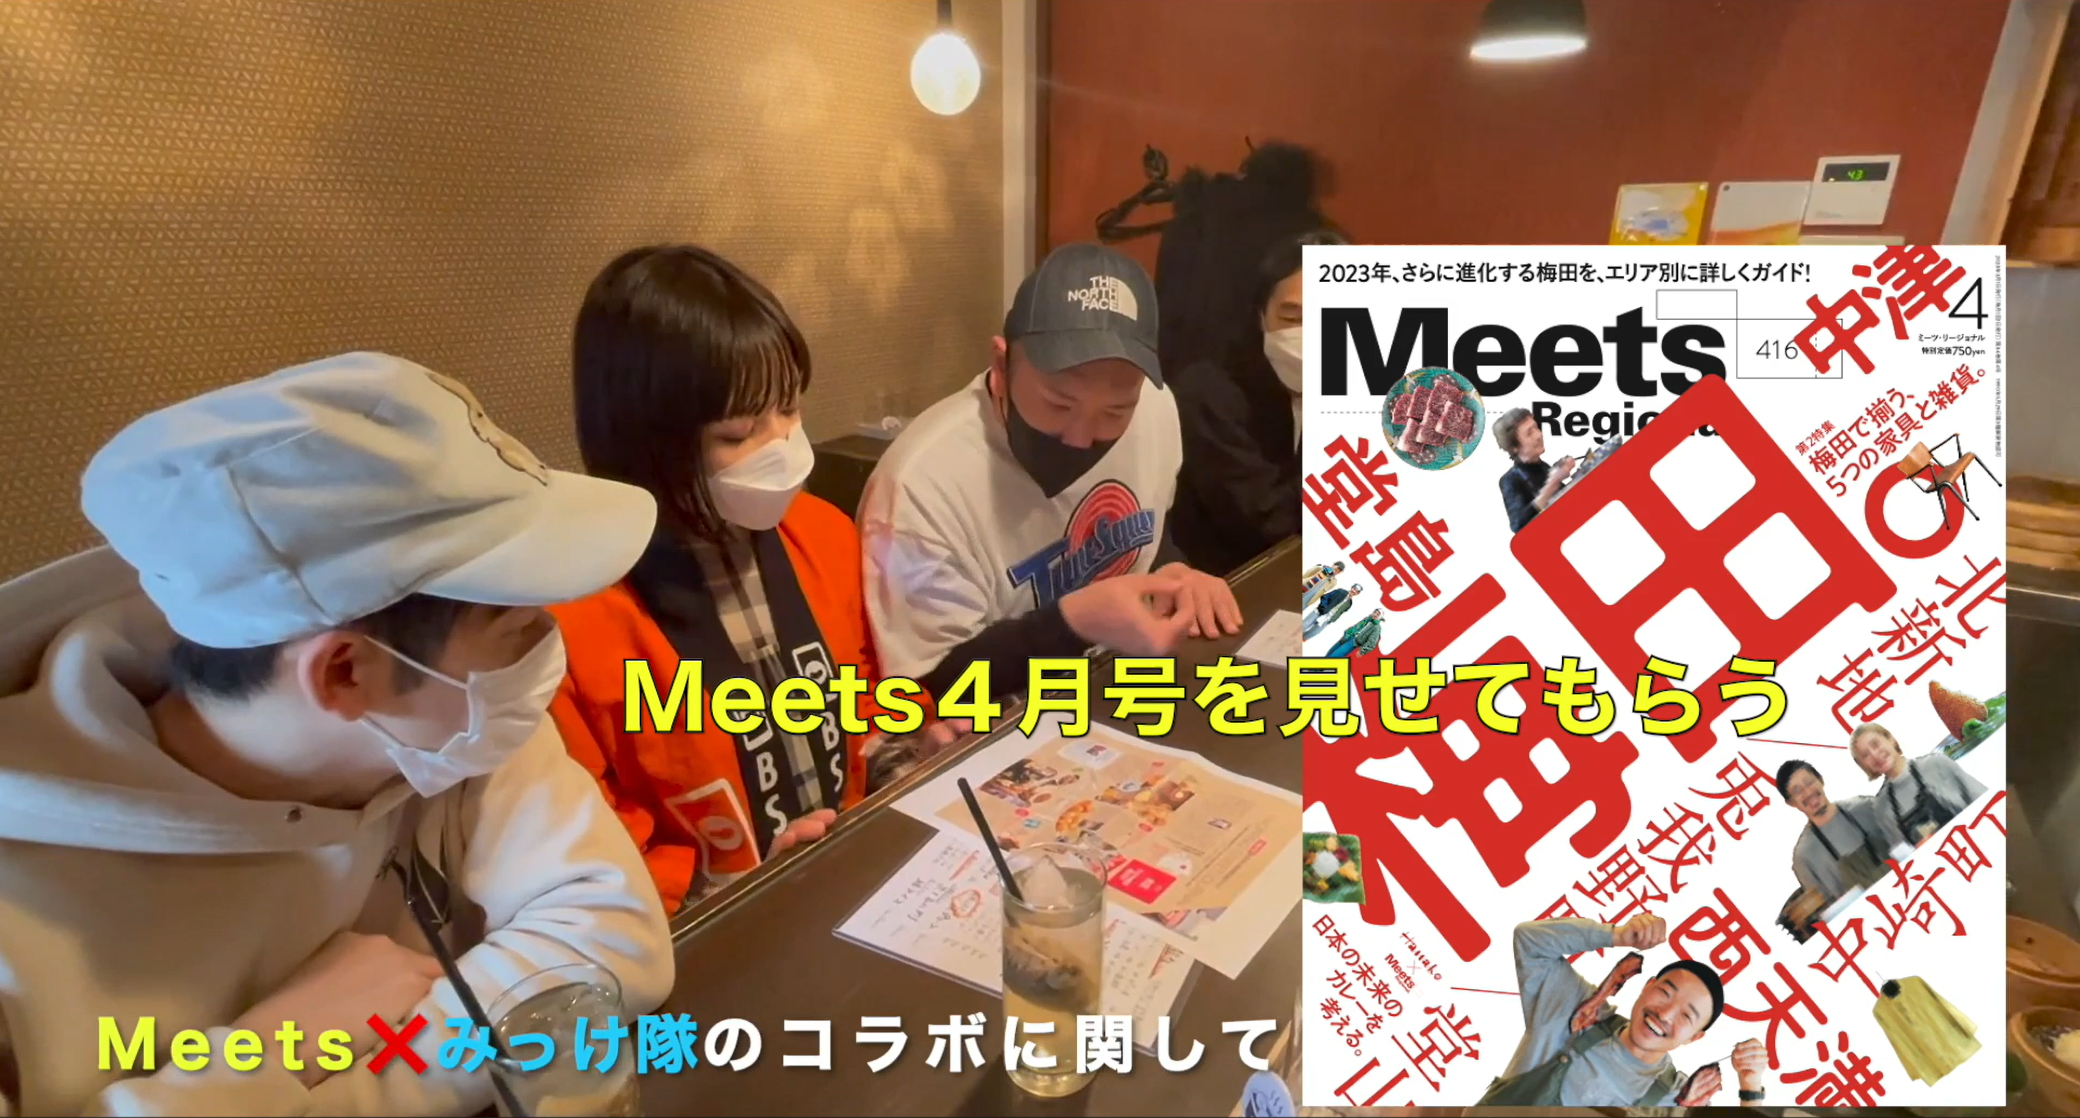 FANY マガジン：大阪の活性化は商店街から!『なにわ商店街ええもんみっけ隊』が「Meets Regional」とコラボ開始!